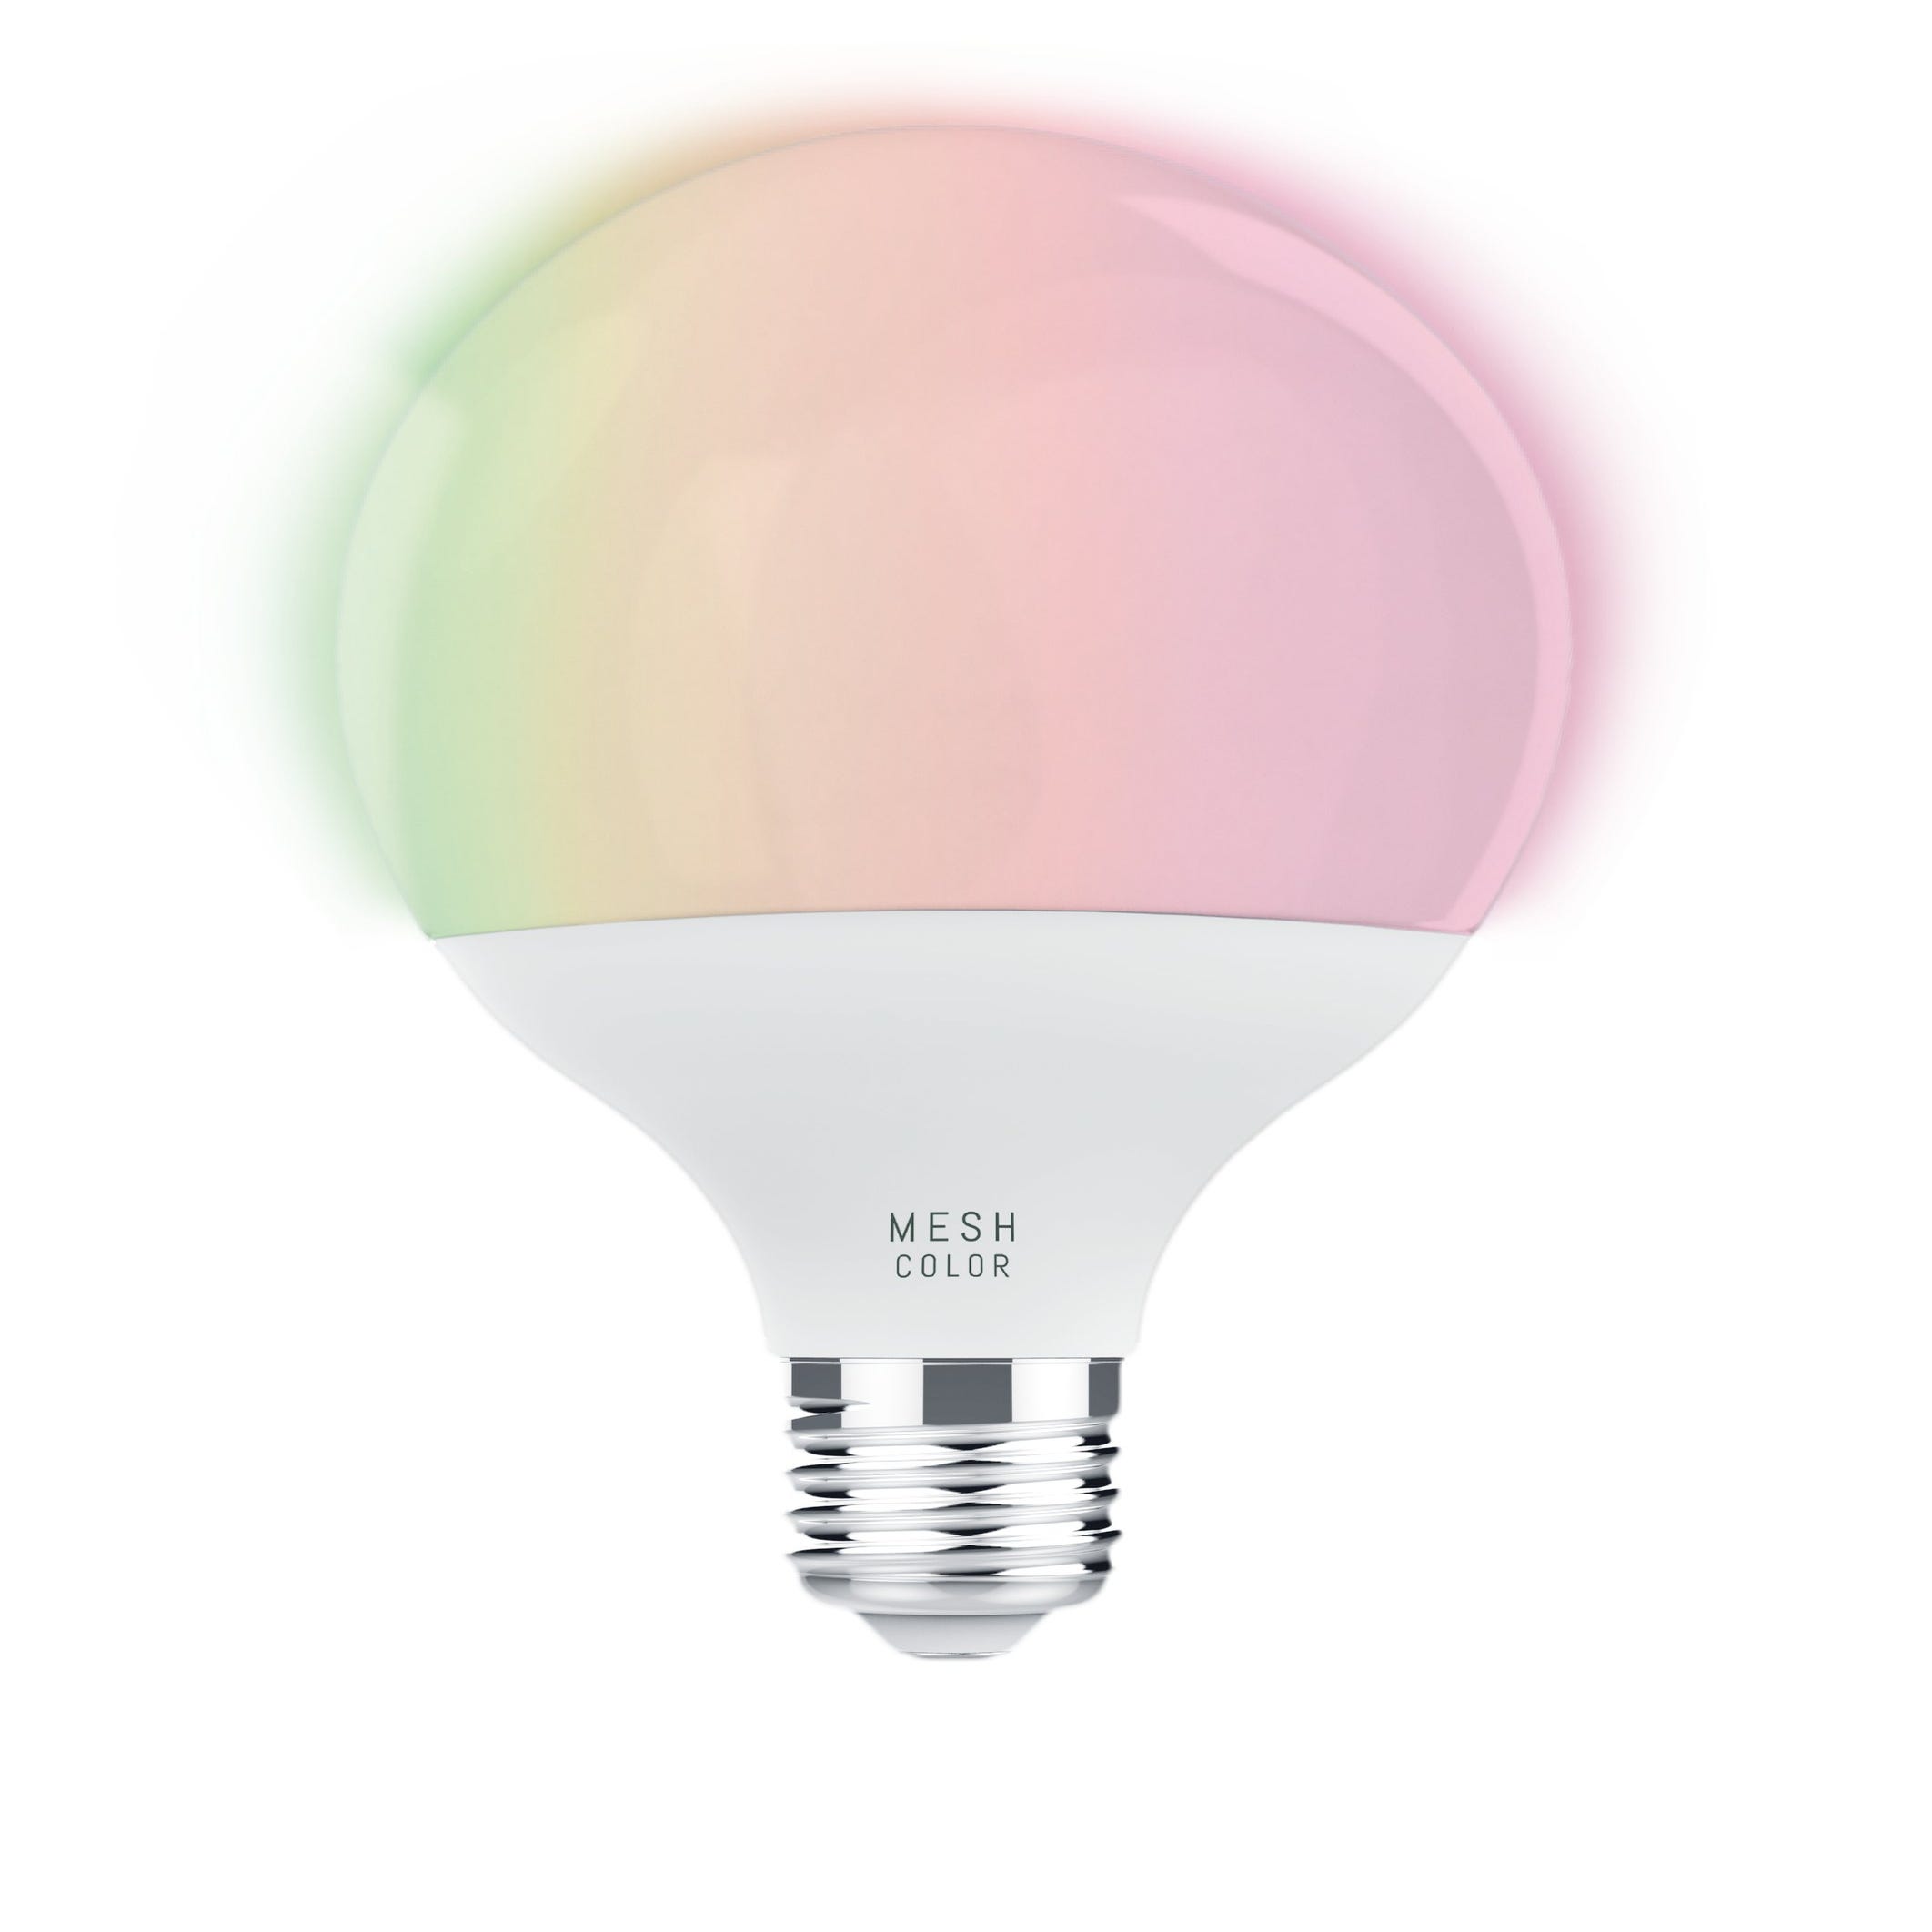 Ampoule Connectée KOZii SMD E27 1521 lumens G95, éclairage blancs + couleurs